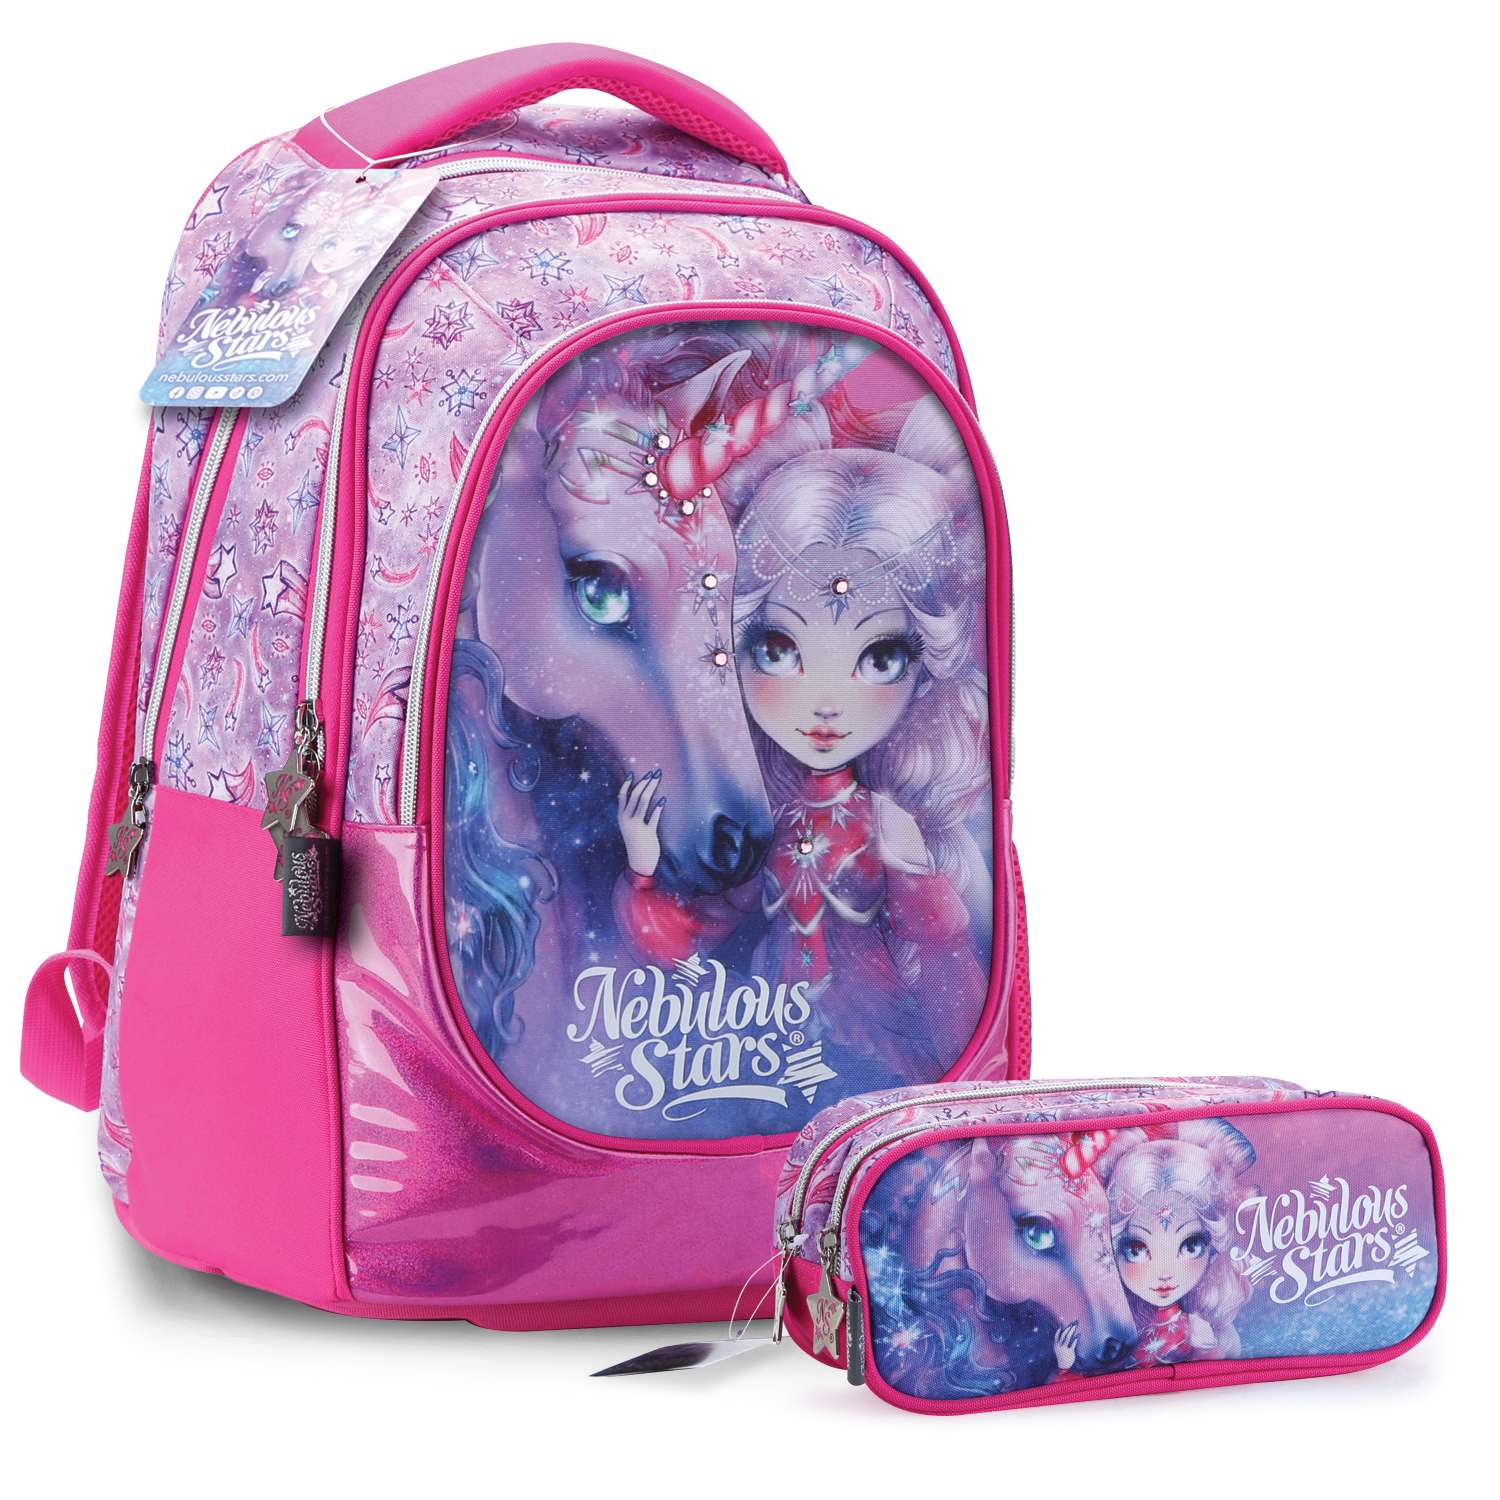 Школьный рюкзак Nebulous Stars для девочек - фото 6